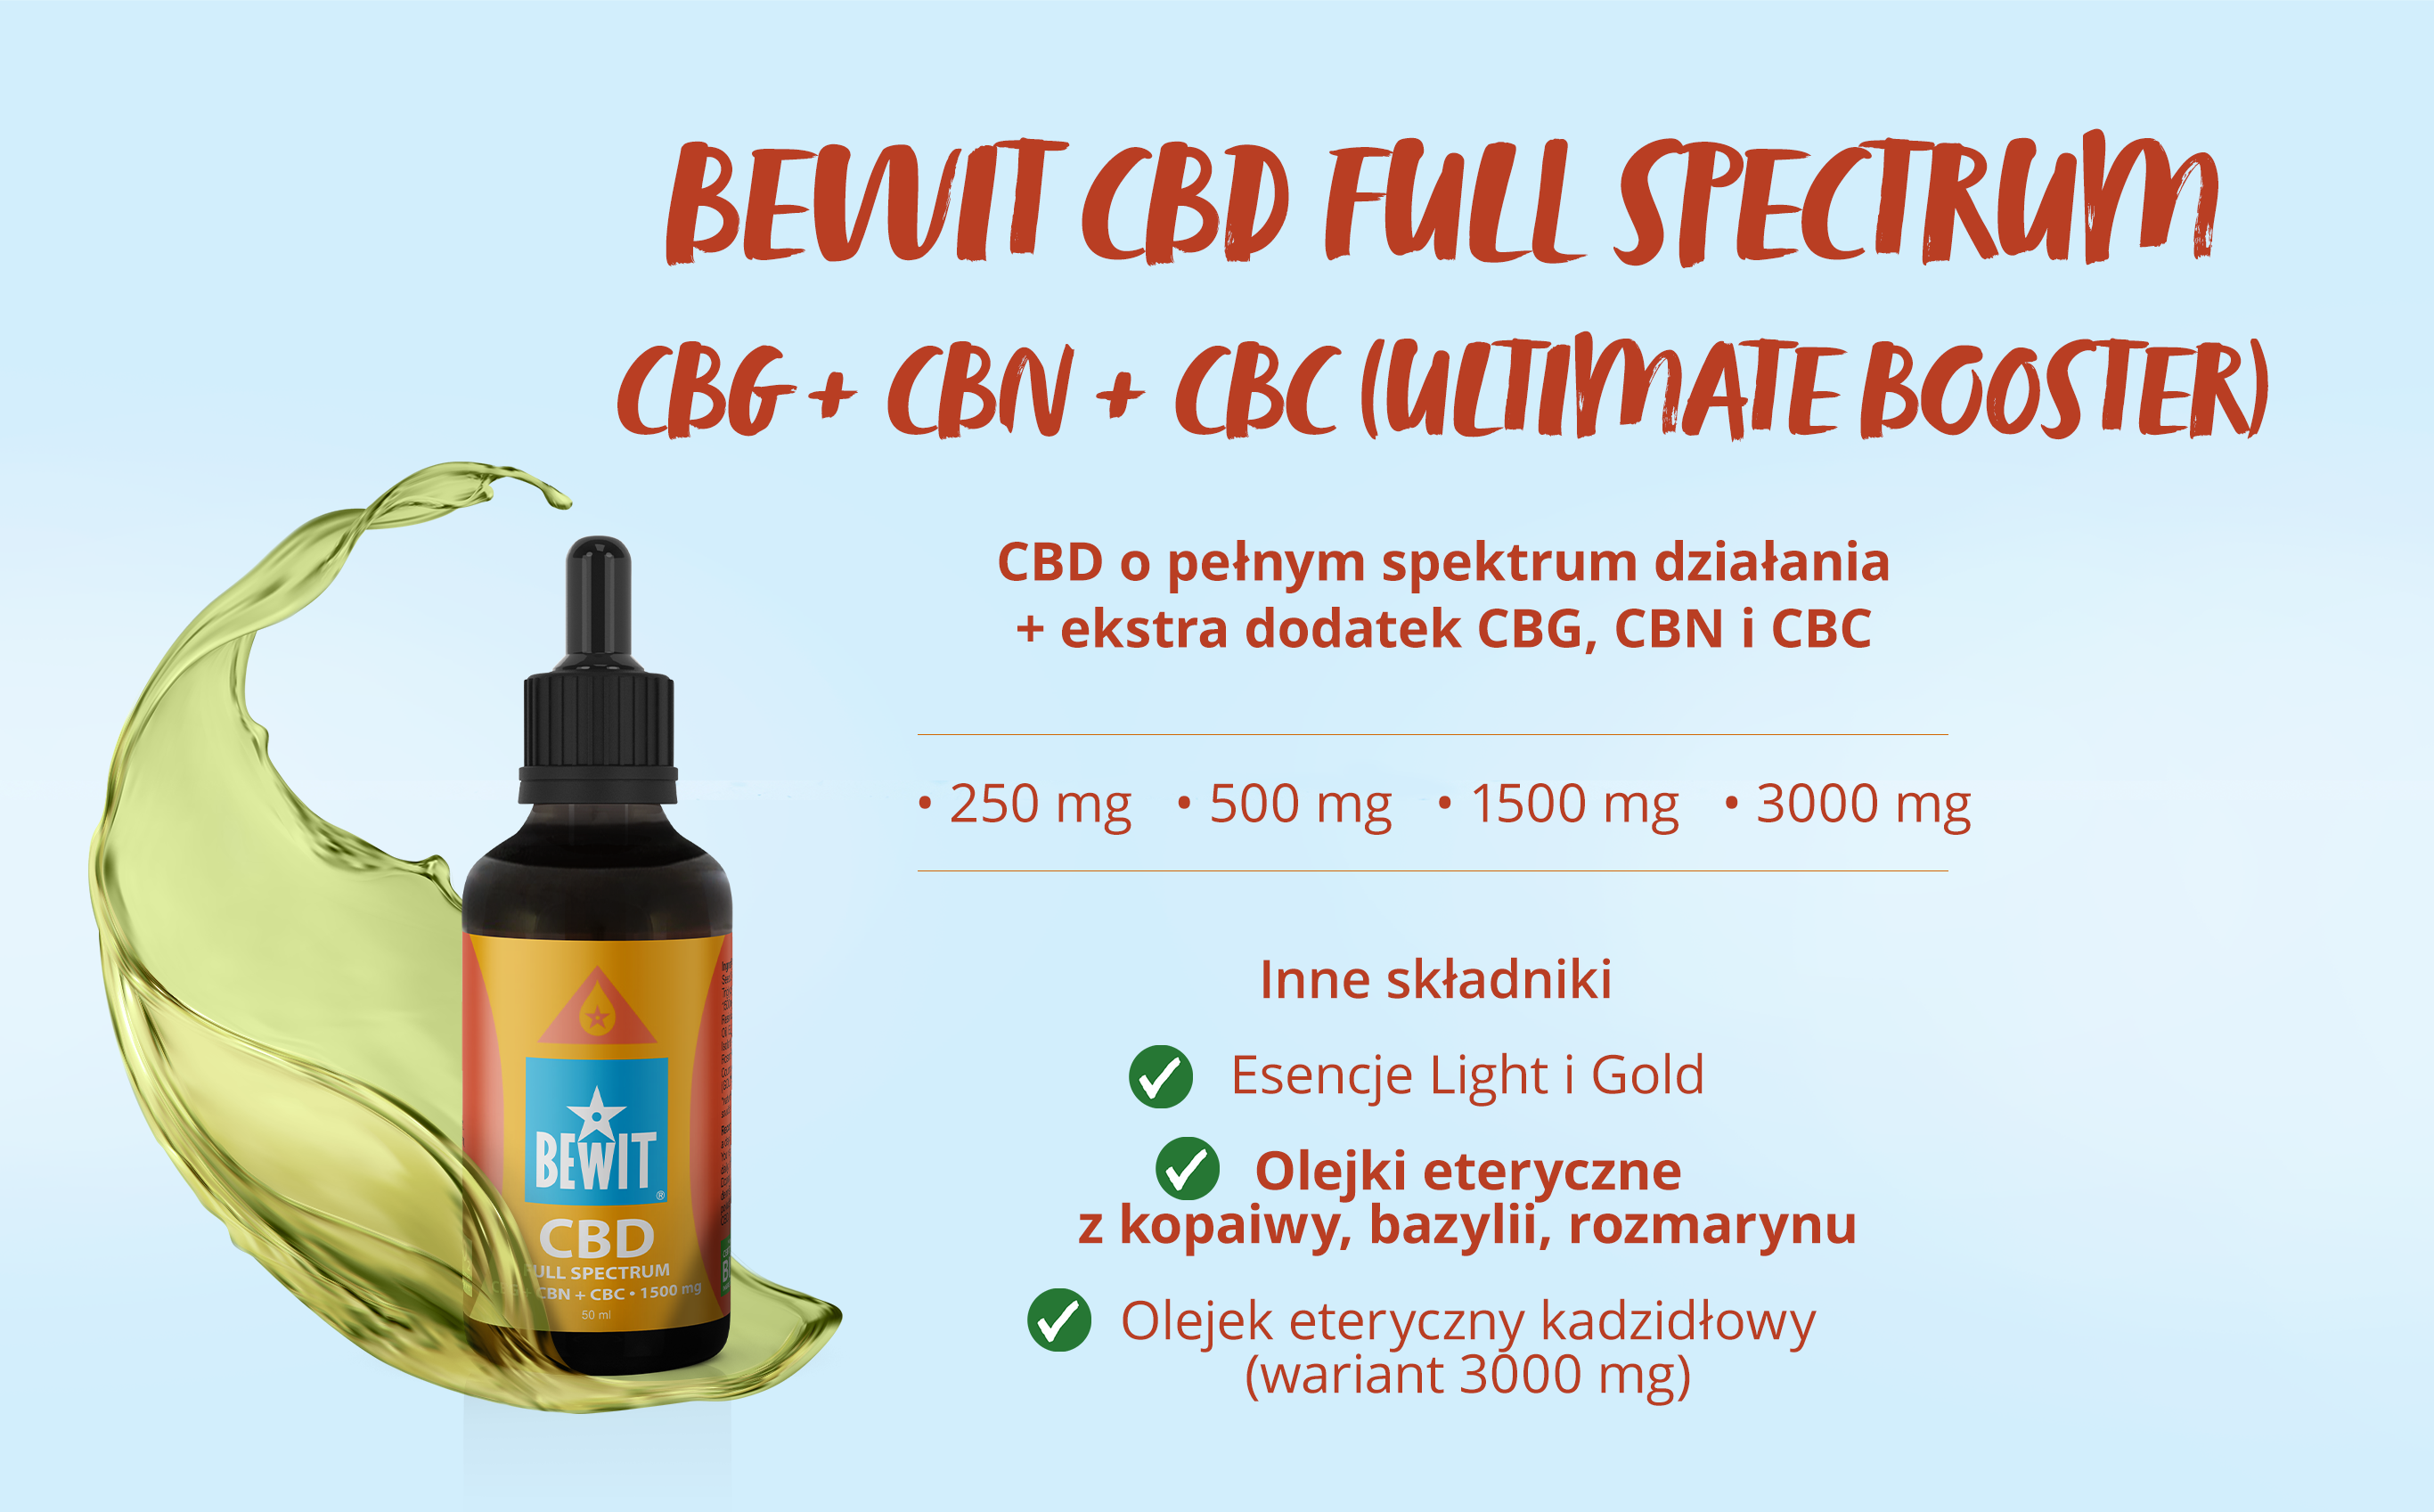 BEWIT CBD FULL SPECTRUM CBG+CBN+CBC